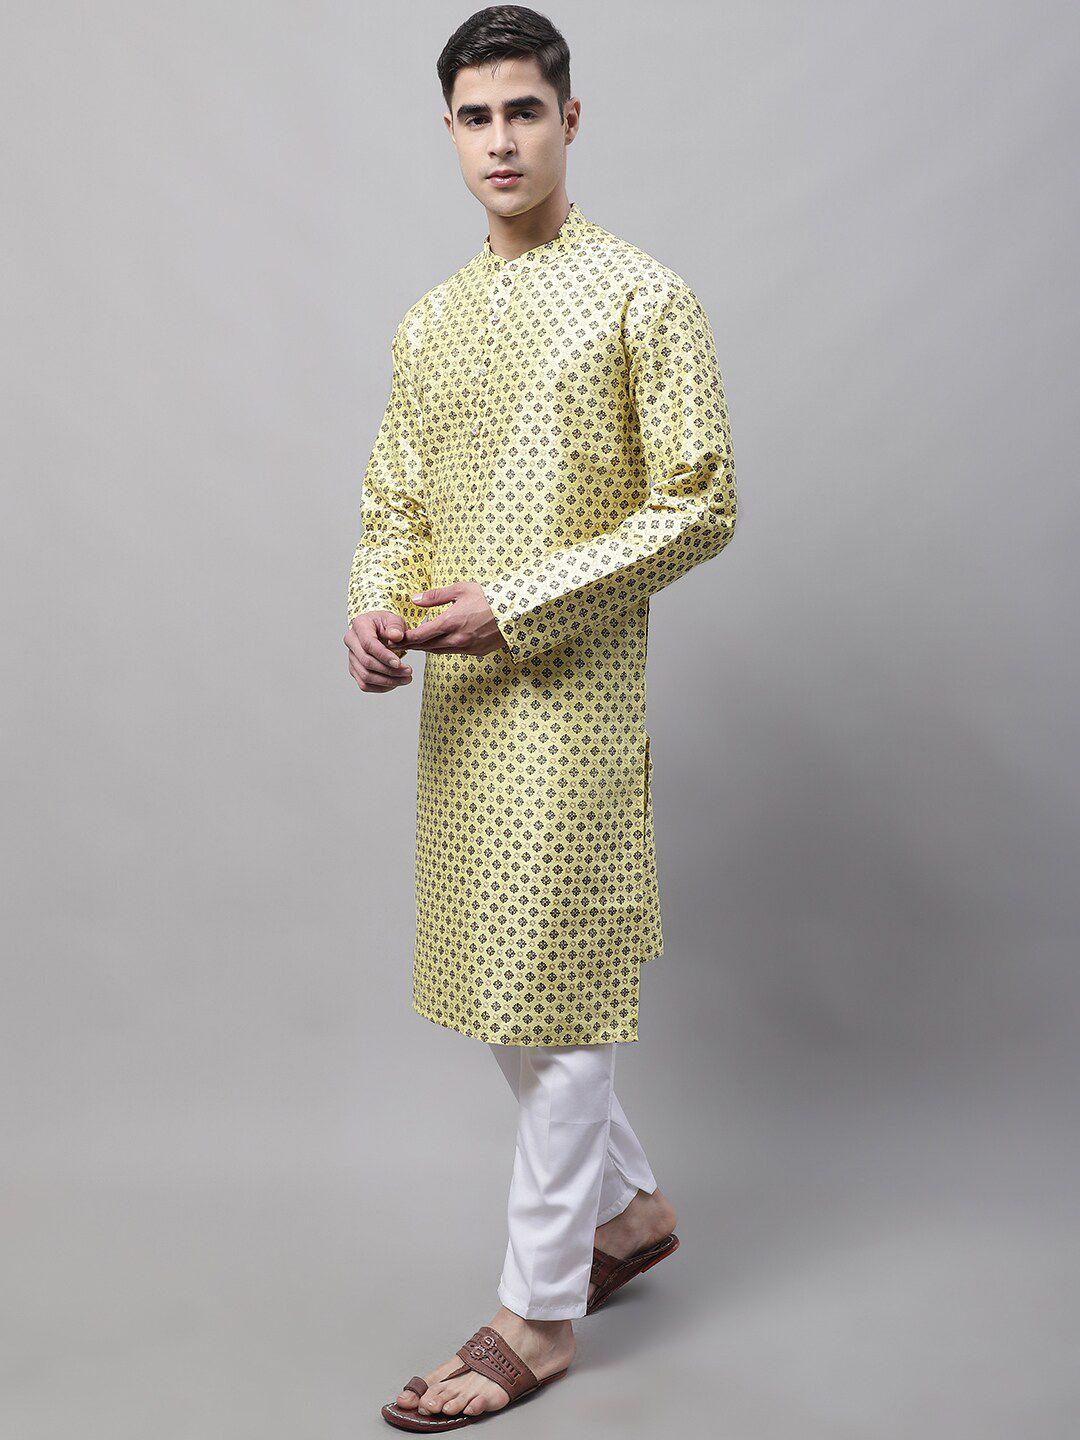 jompers men yellow printed kurta with pyjamas